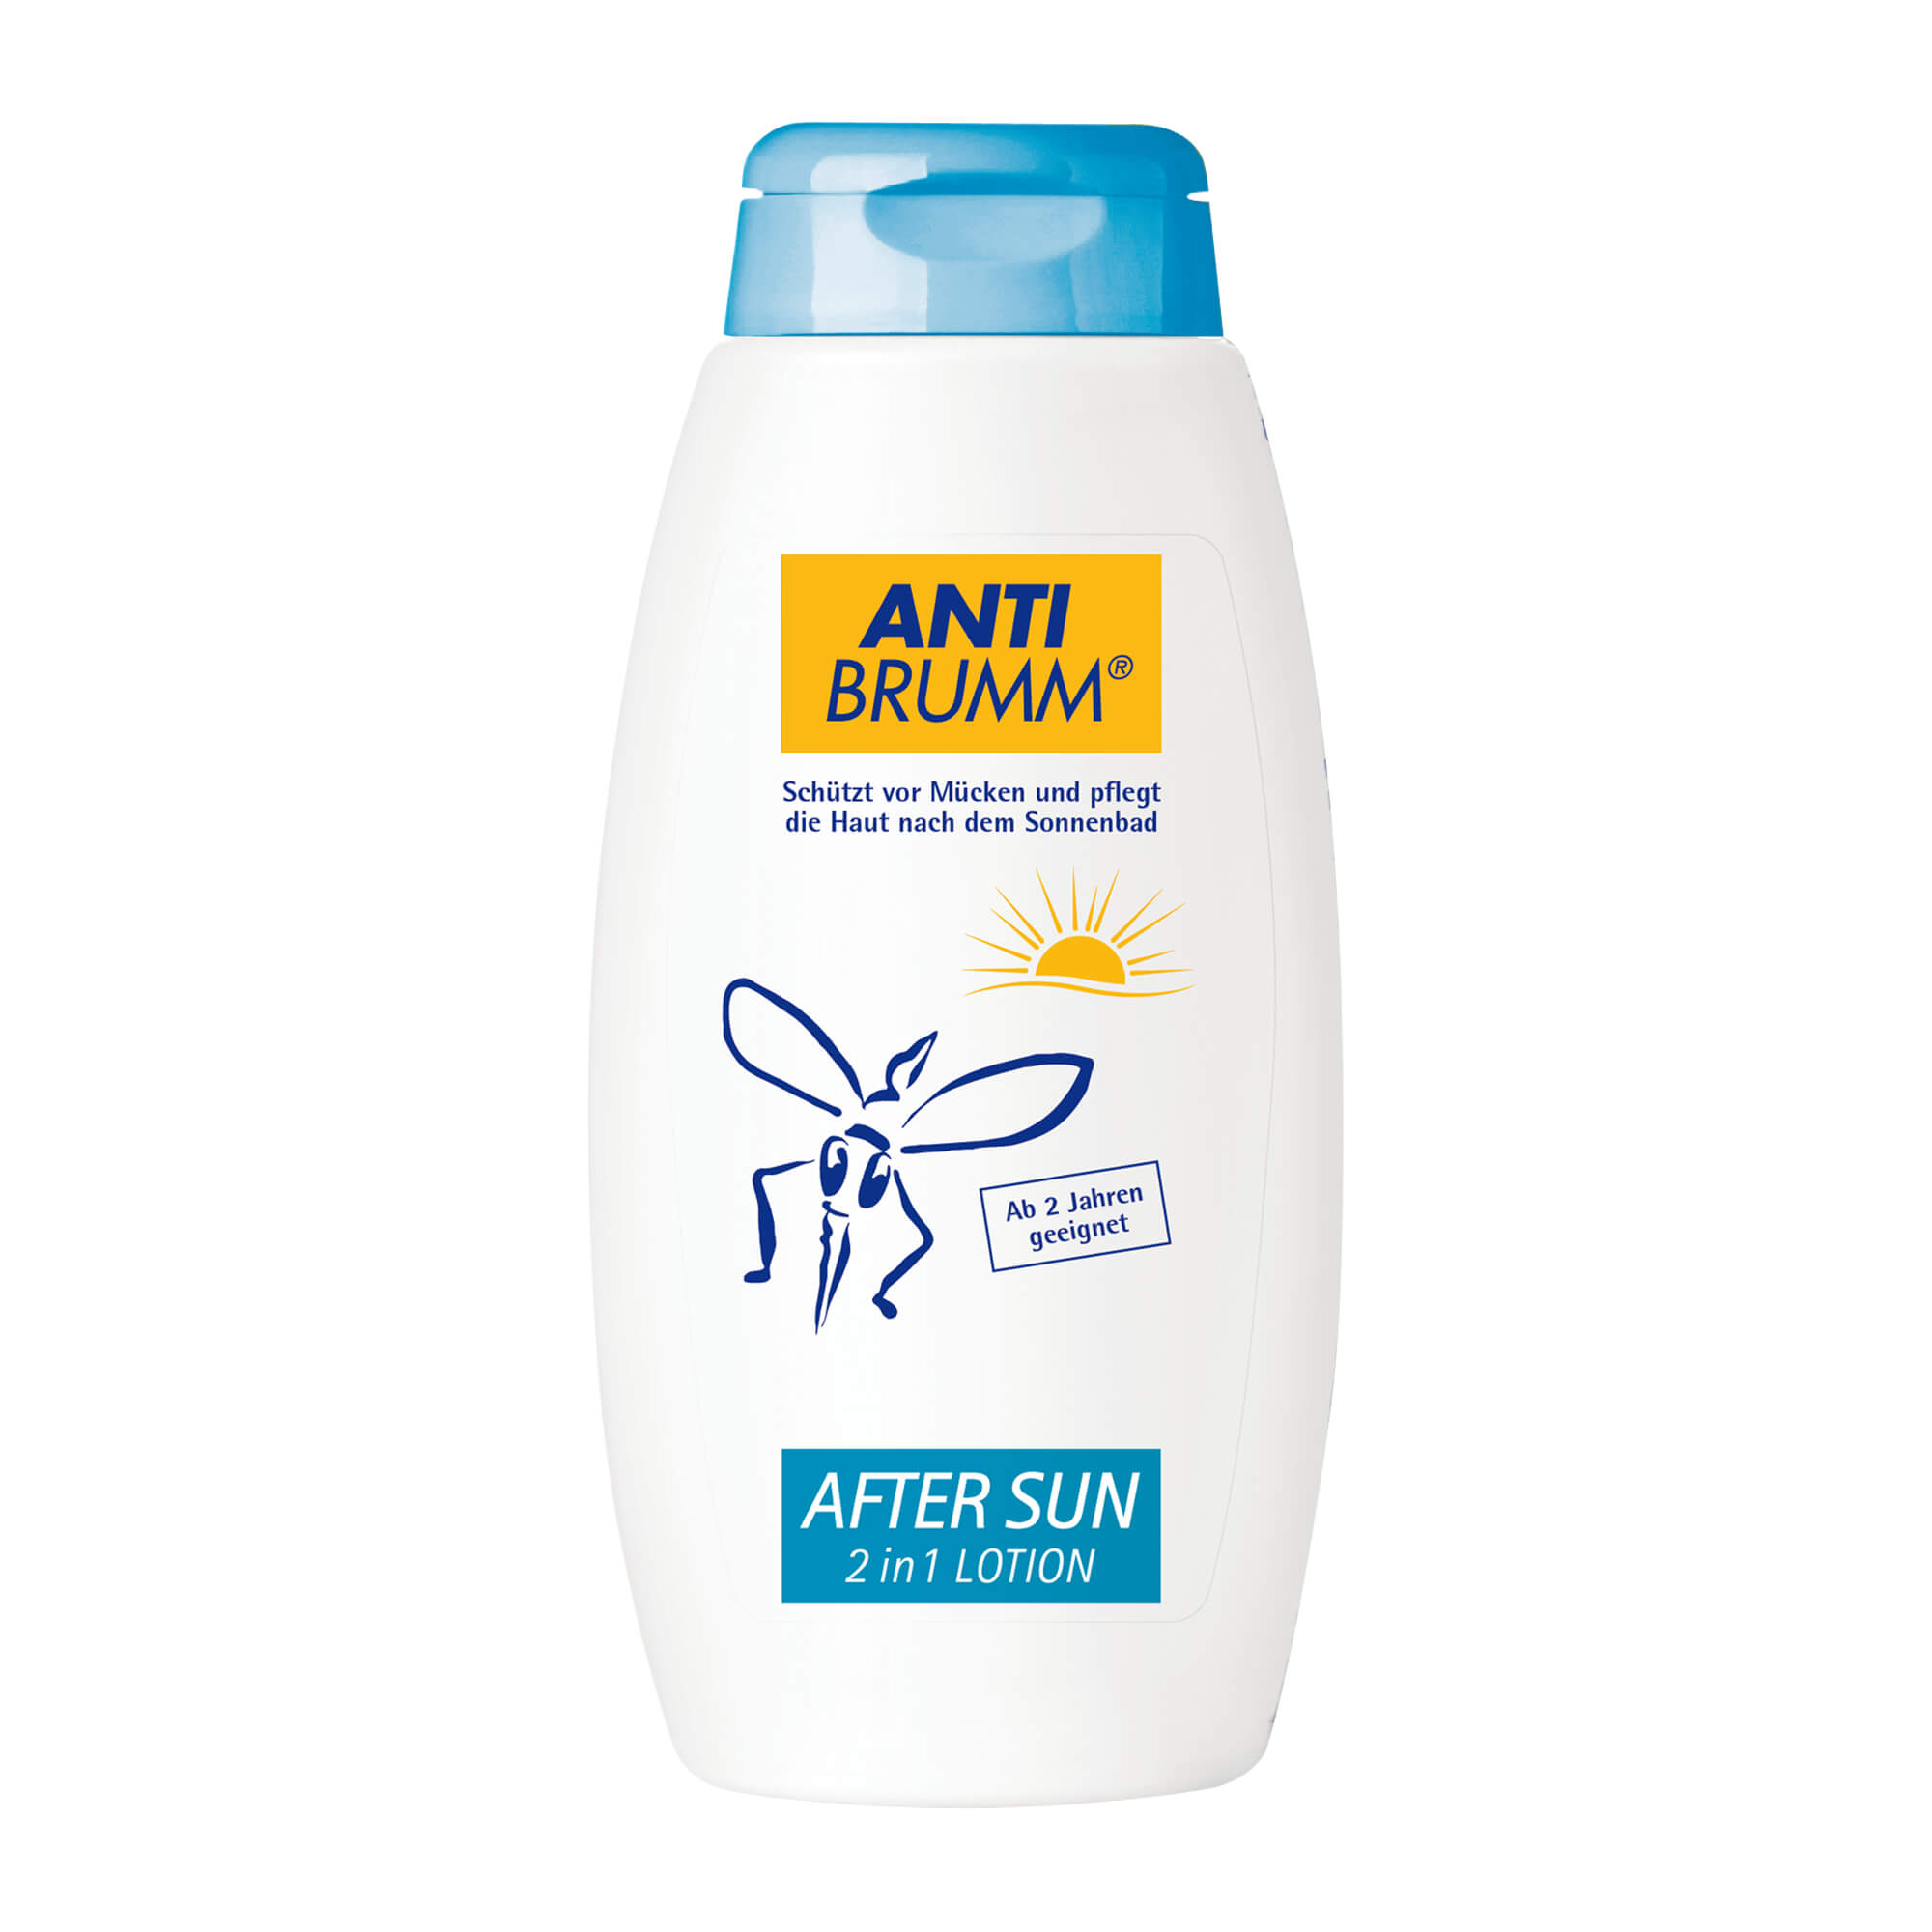 Schützt vor Mücken und pflegt die Haut nach dem Sonnenbad.